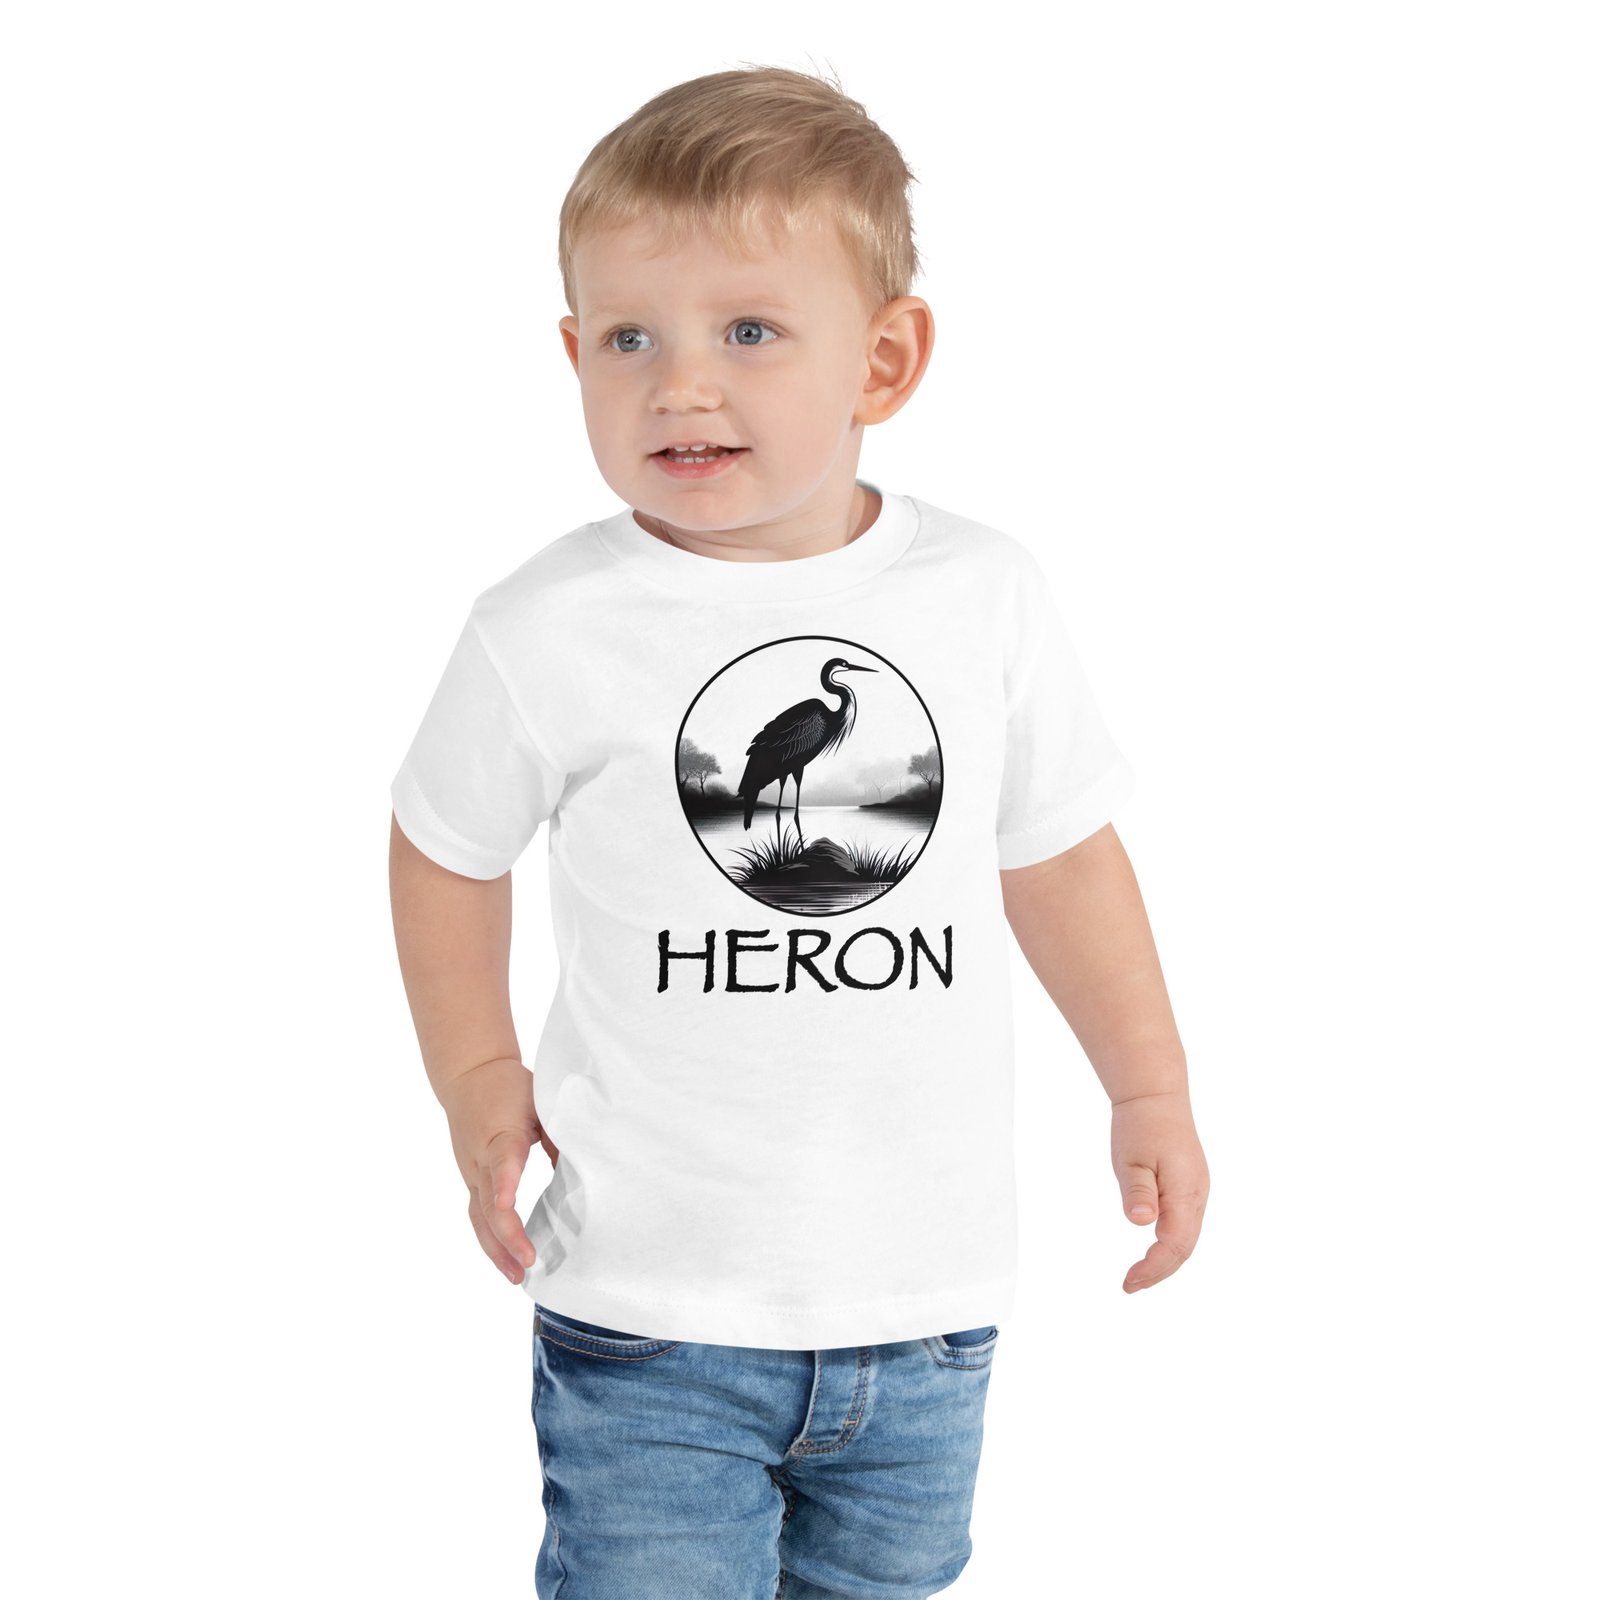 Heron Bird Toddler T-shirt - White